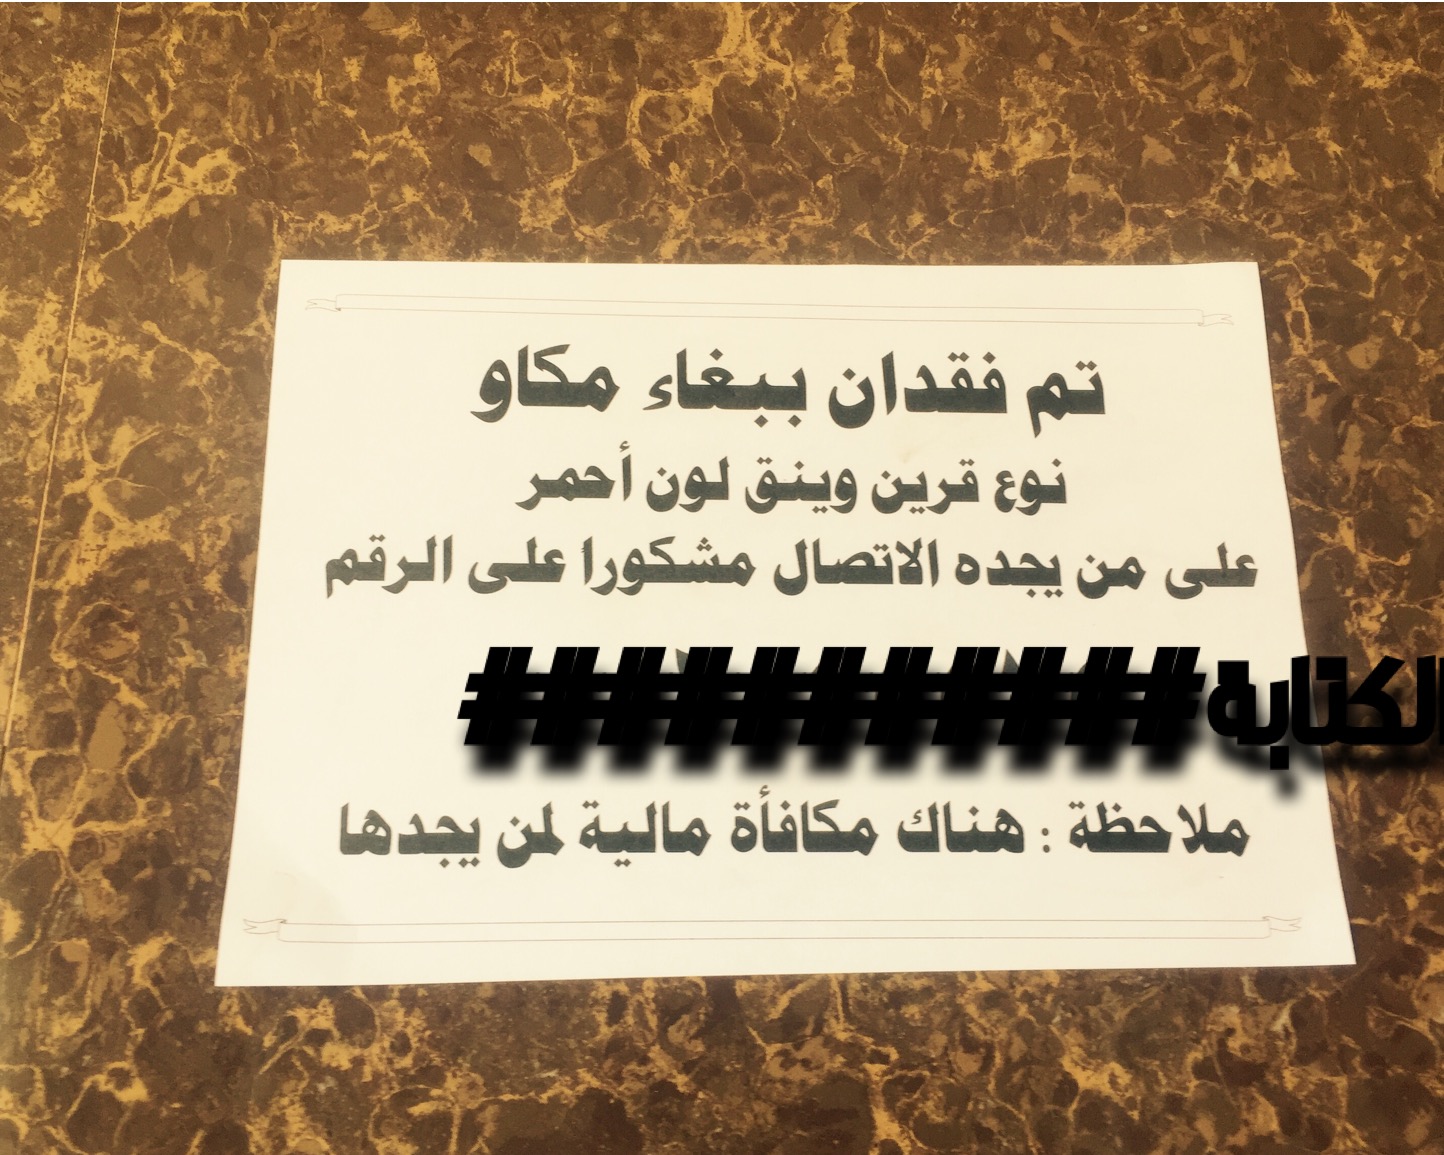 منشور عن ببغاء تائه في خميس مشيط يثير استغراب المواطنين